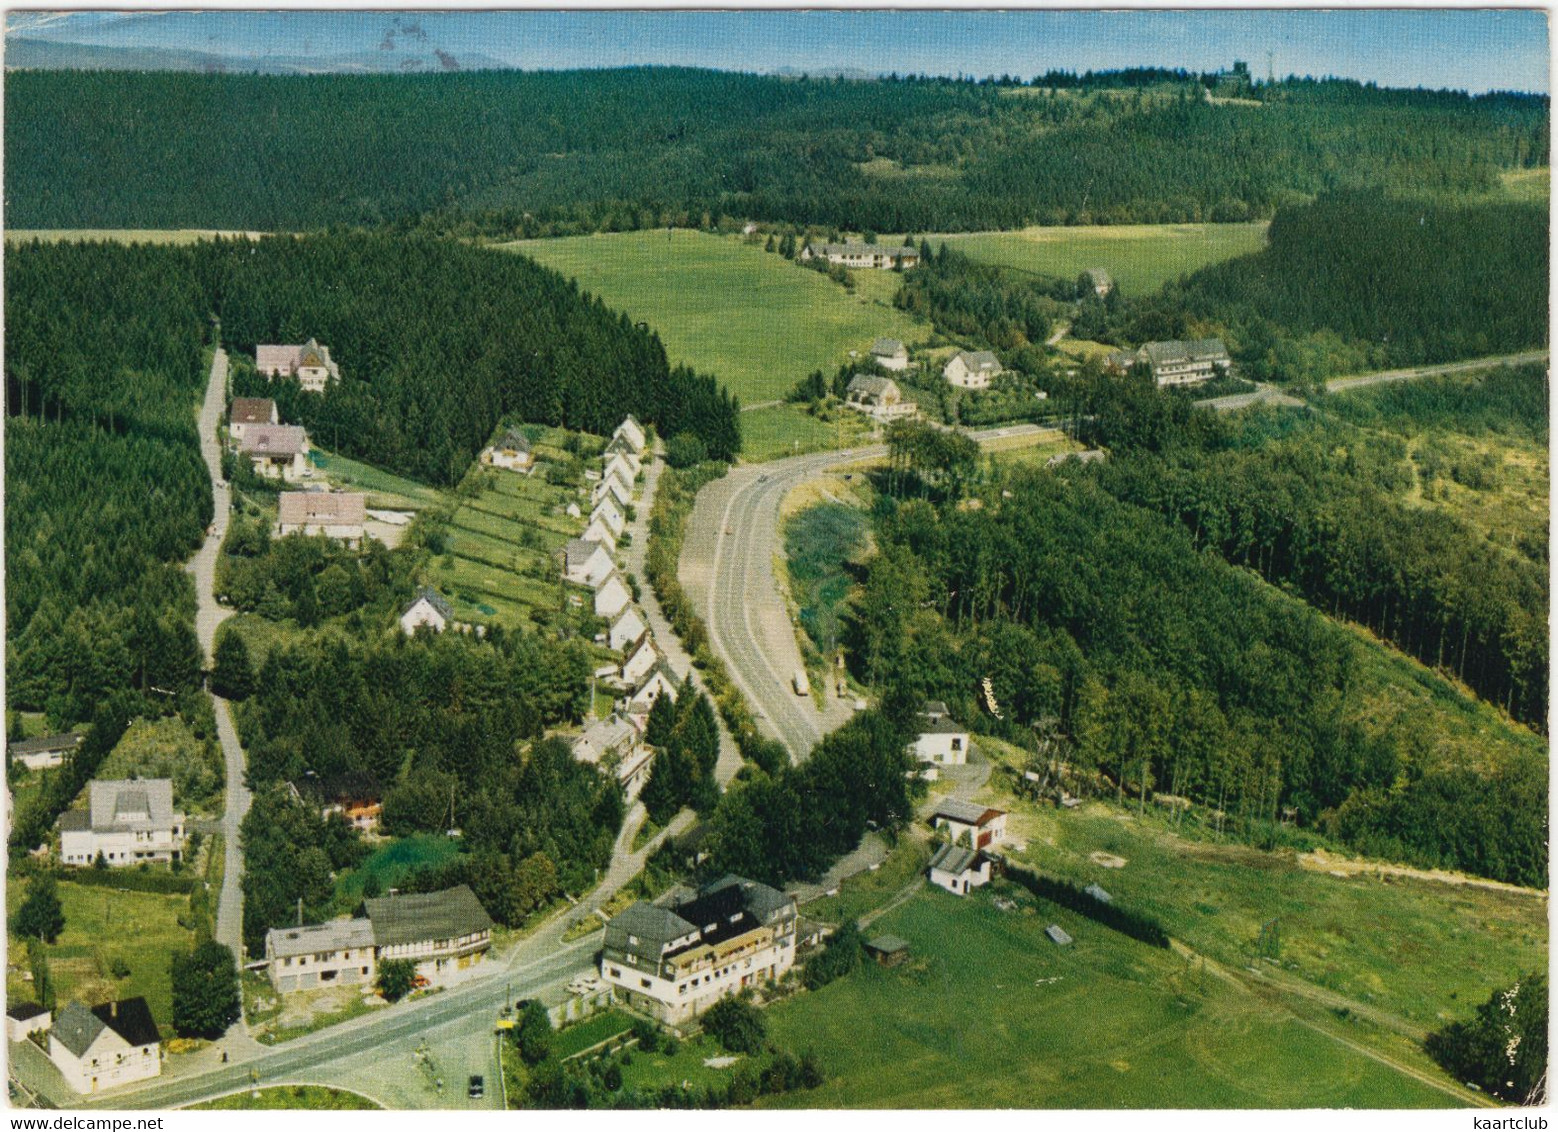 Neuastenberg - Blick Zum Astenturm 842 M ü.M. - Hochsauerland - (1975) - Winterberg